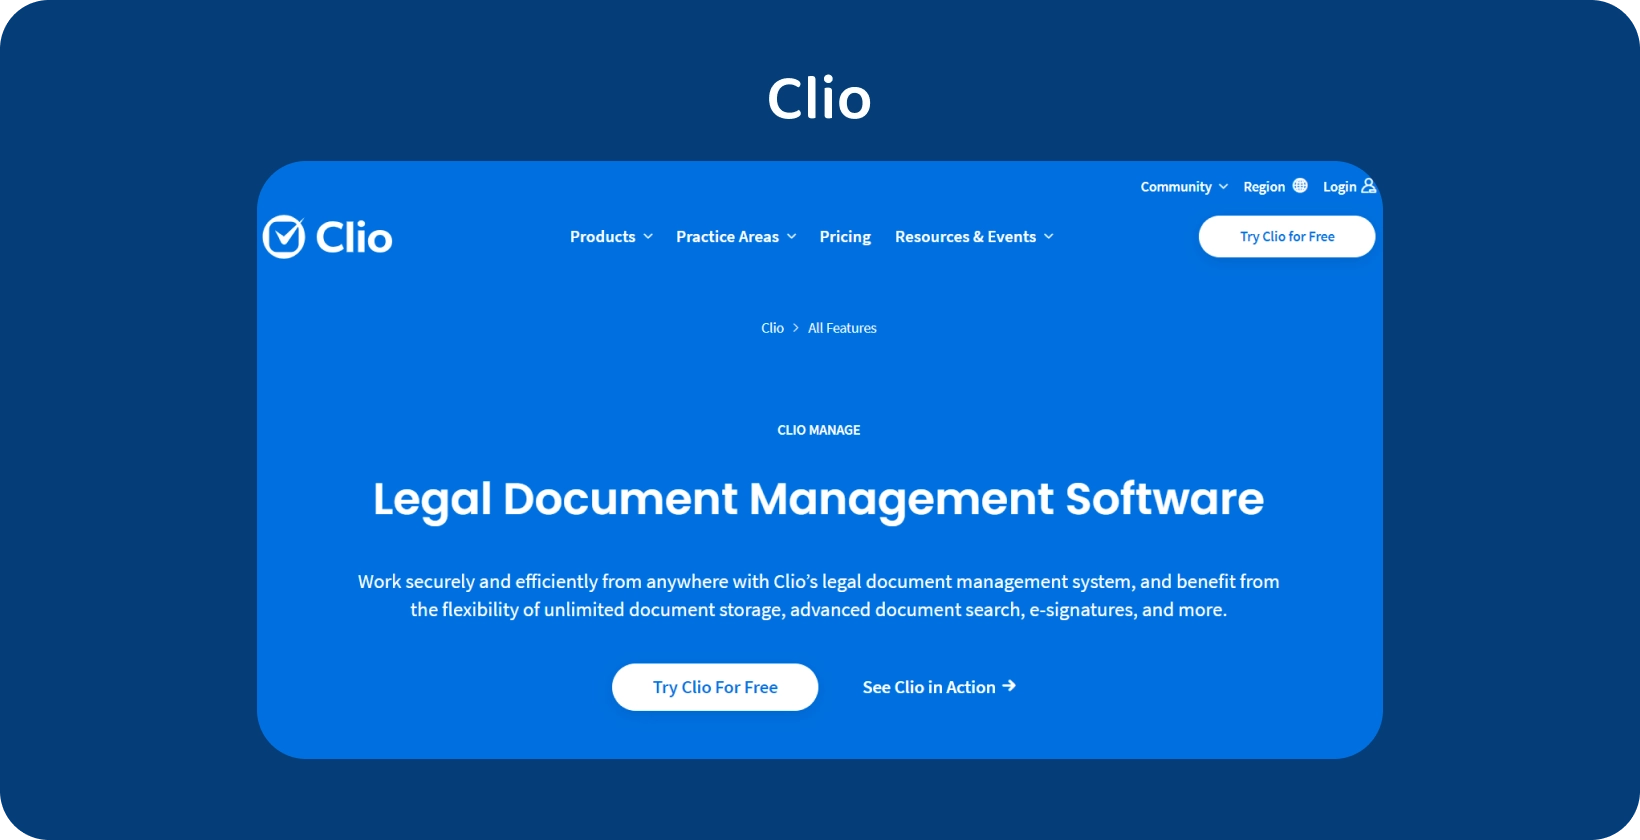 Korisničko sučelje Clio prikazuje njegov softver za upravljanje pravnim dokumentima, optimizirajući organizirano rukovanje zapisima.